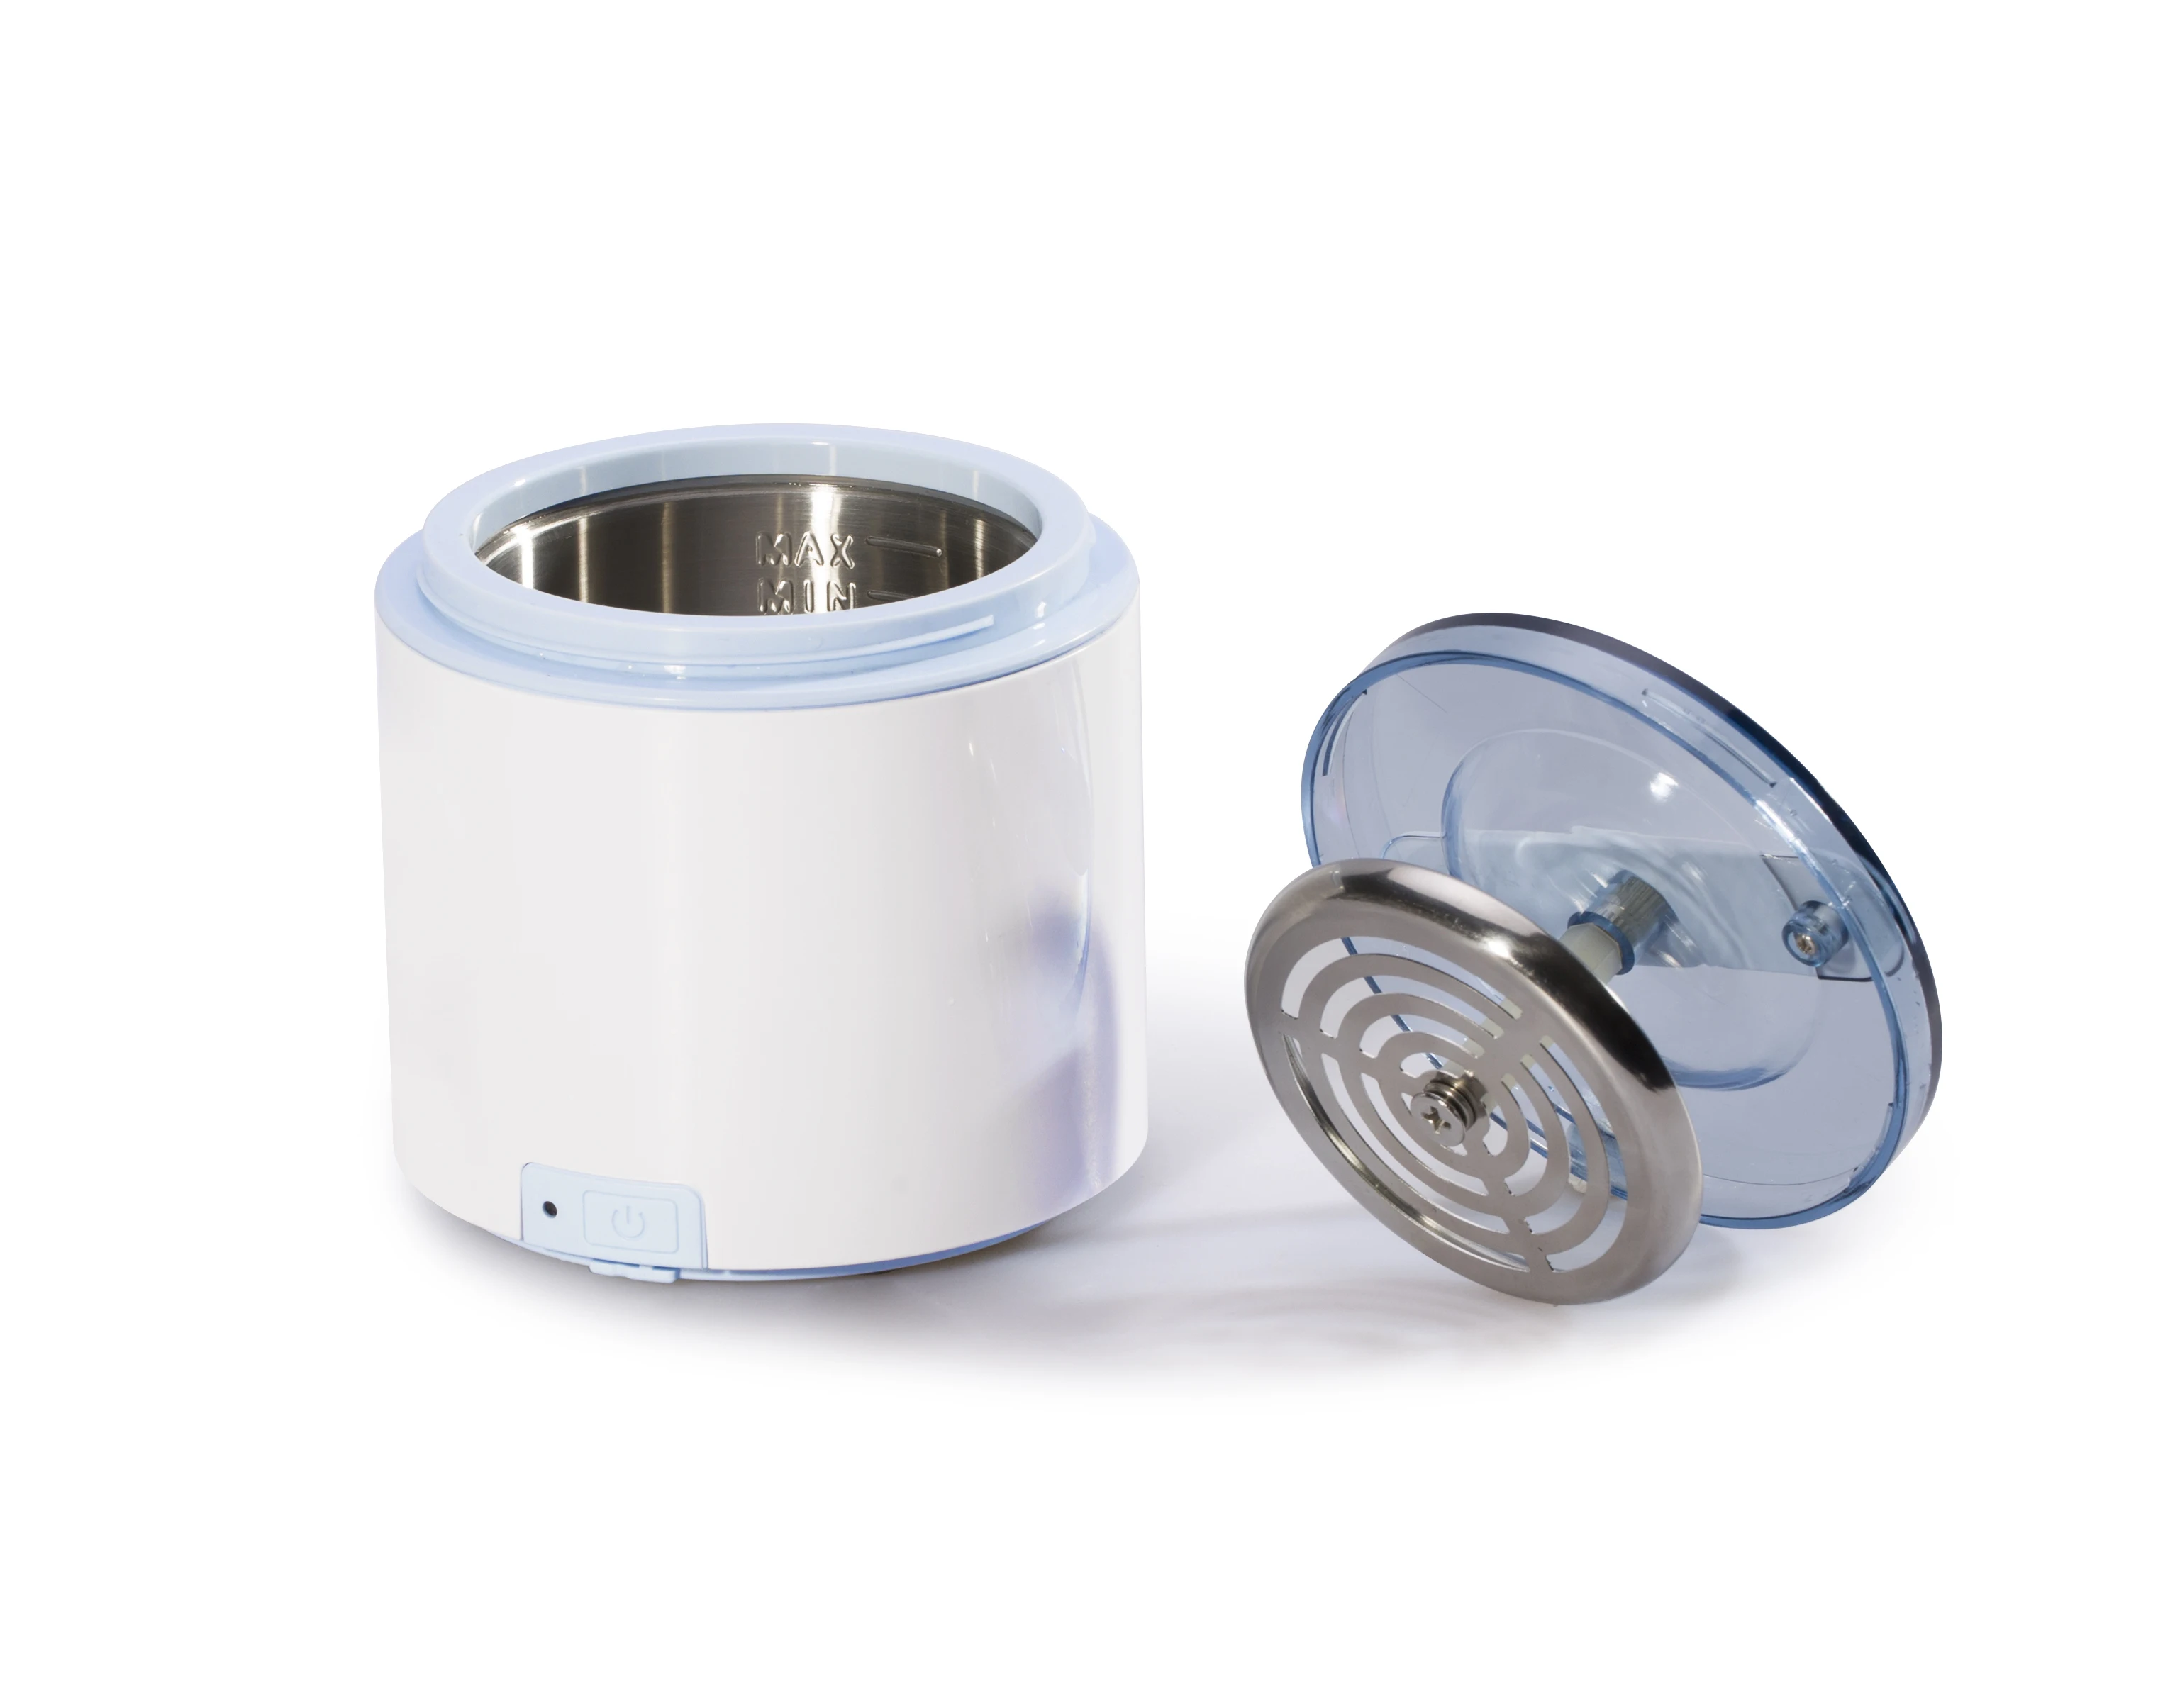 Detachable wireless  denture  medical mini household ultrasonic cleaner 